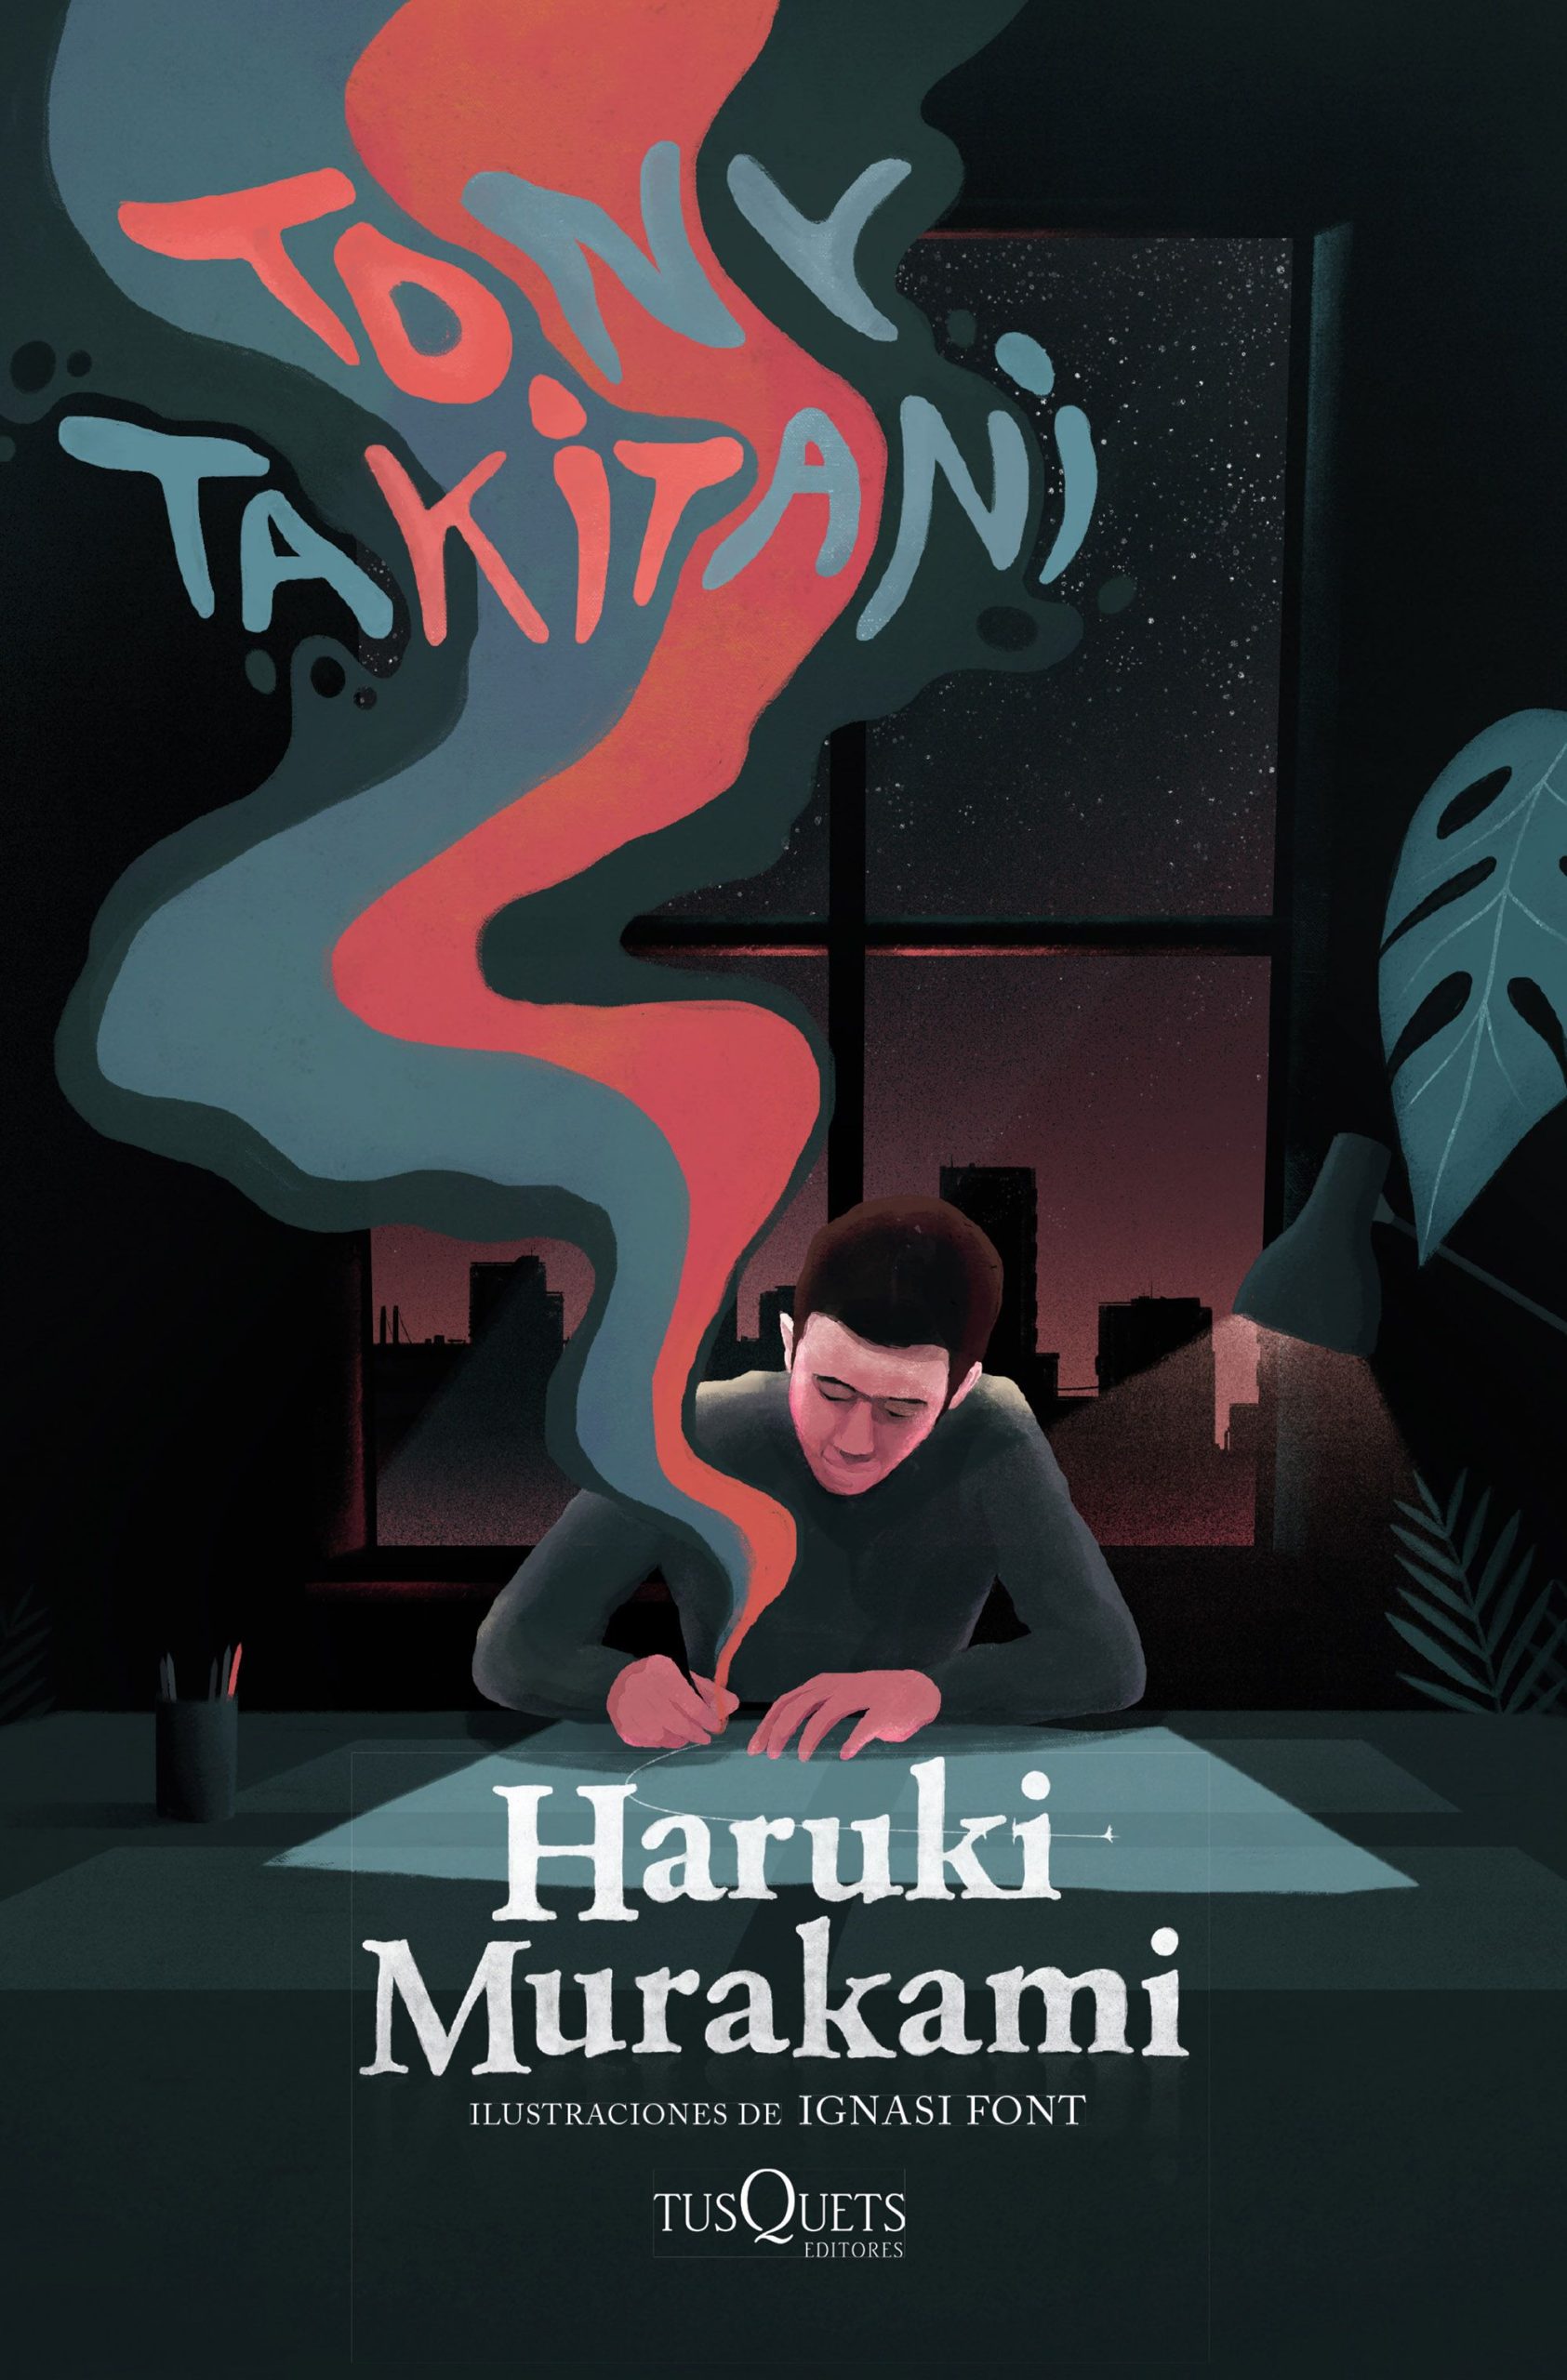 Tony takitani - Haruki Murakami - Tusquets - 9788490667613